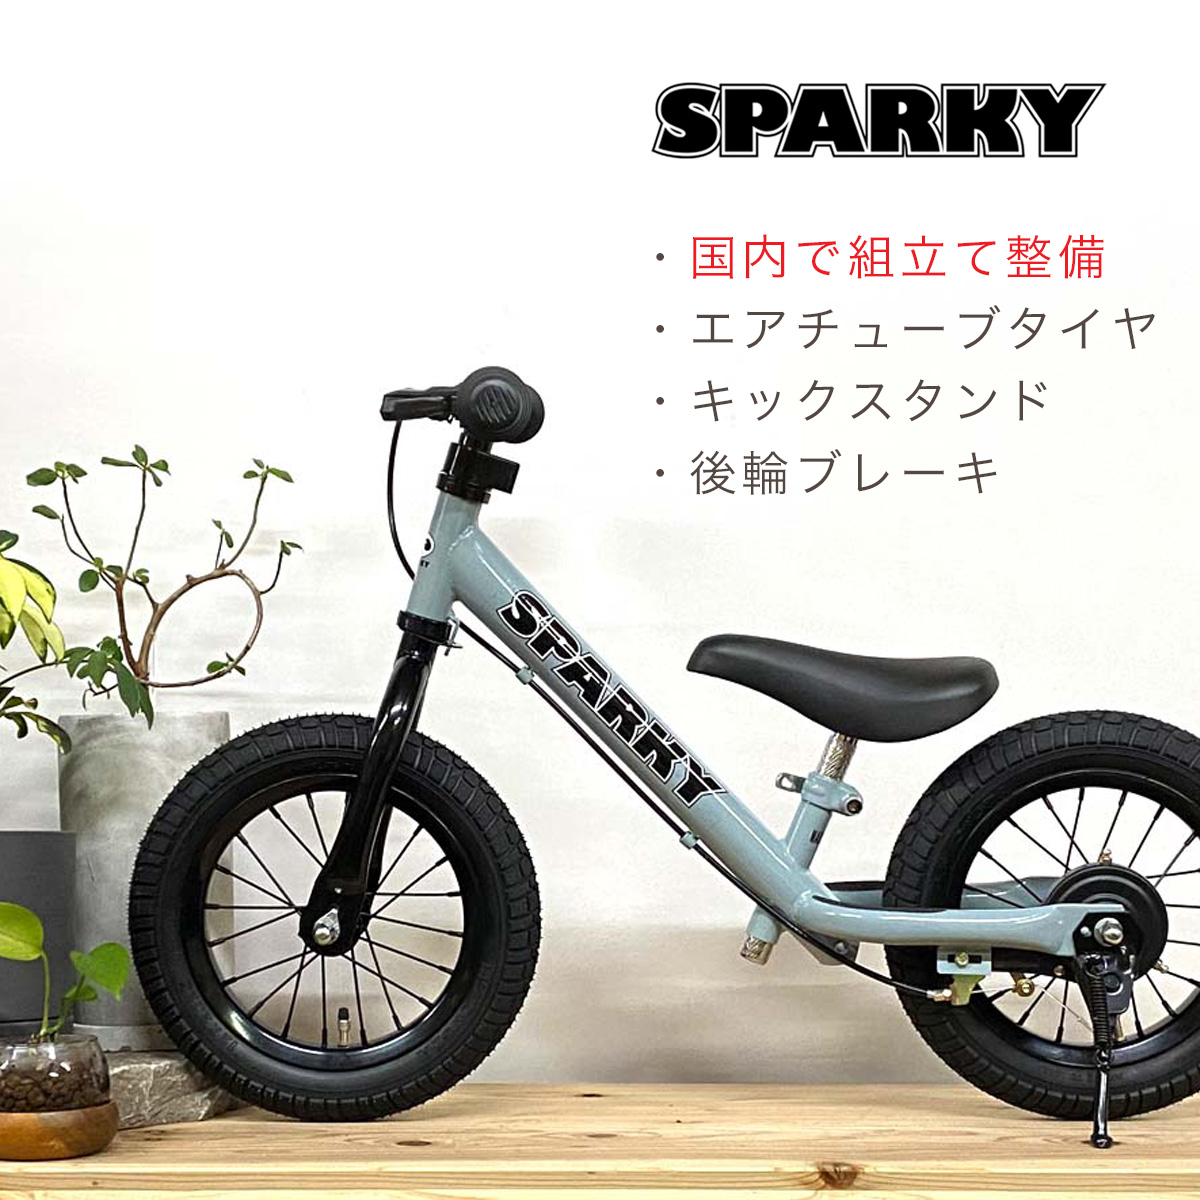 低廉 SPARKY ecru 組立 整備済み ブレーキ ゴムタイヤ スタンド 装備 スパーキー おしゃれ キックバイク バランスバイク iimo ファー ストライダー